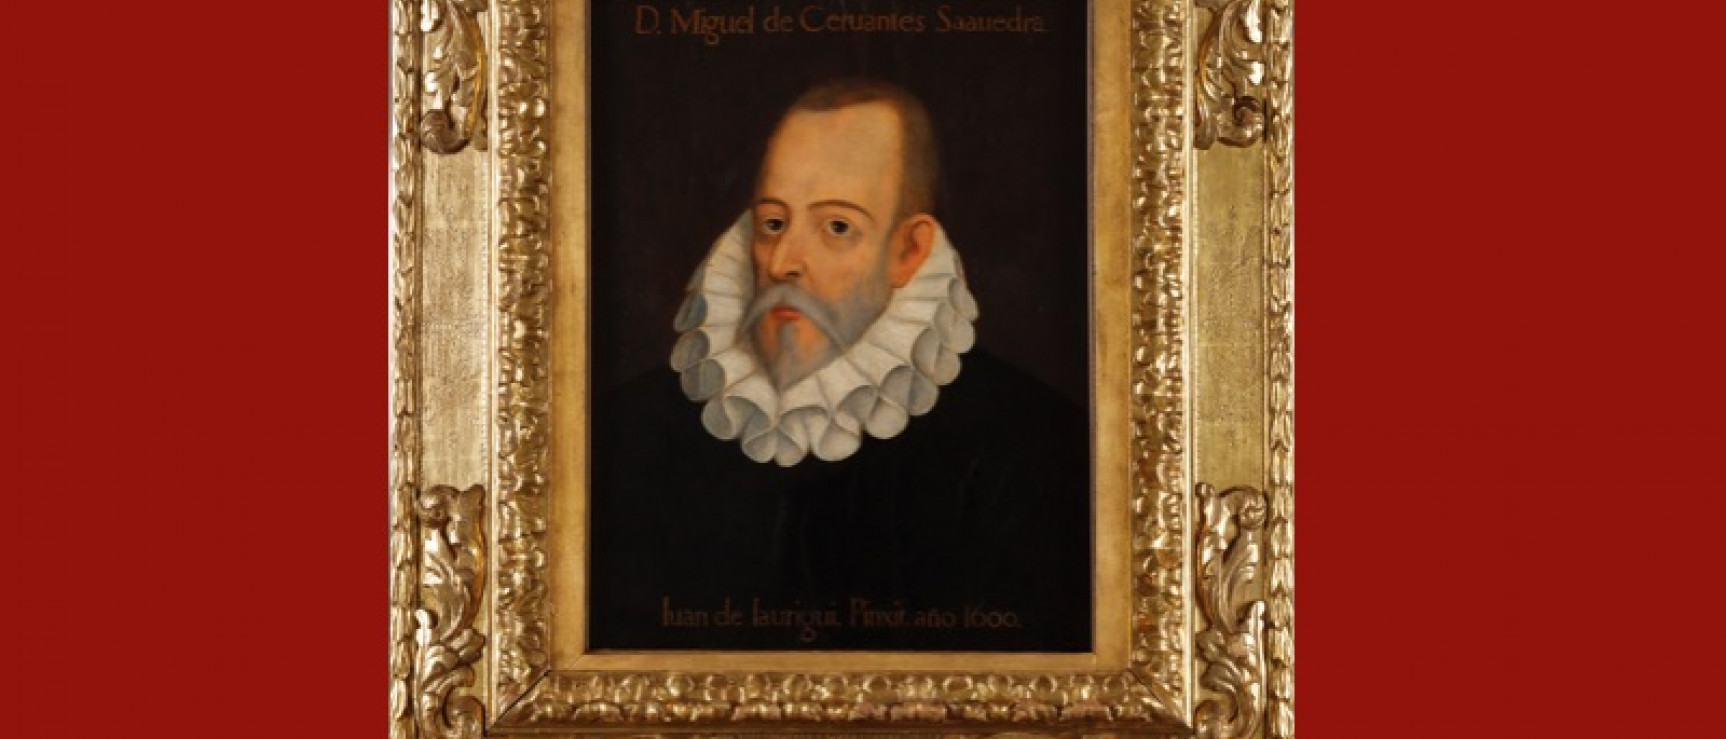 Retrato apócrifo de Cervantes, atribuido erróneamente a Juan de Jáuregui, que preside el salón de actos de la RAE.